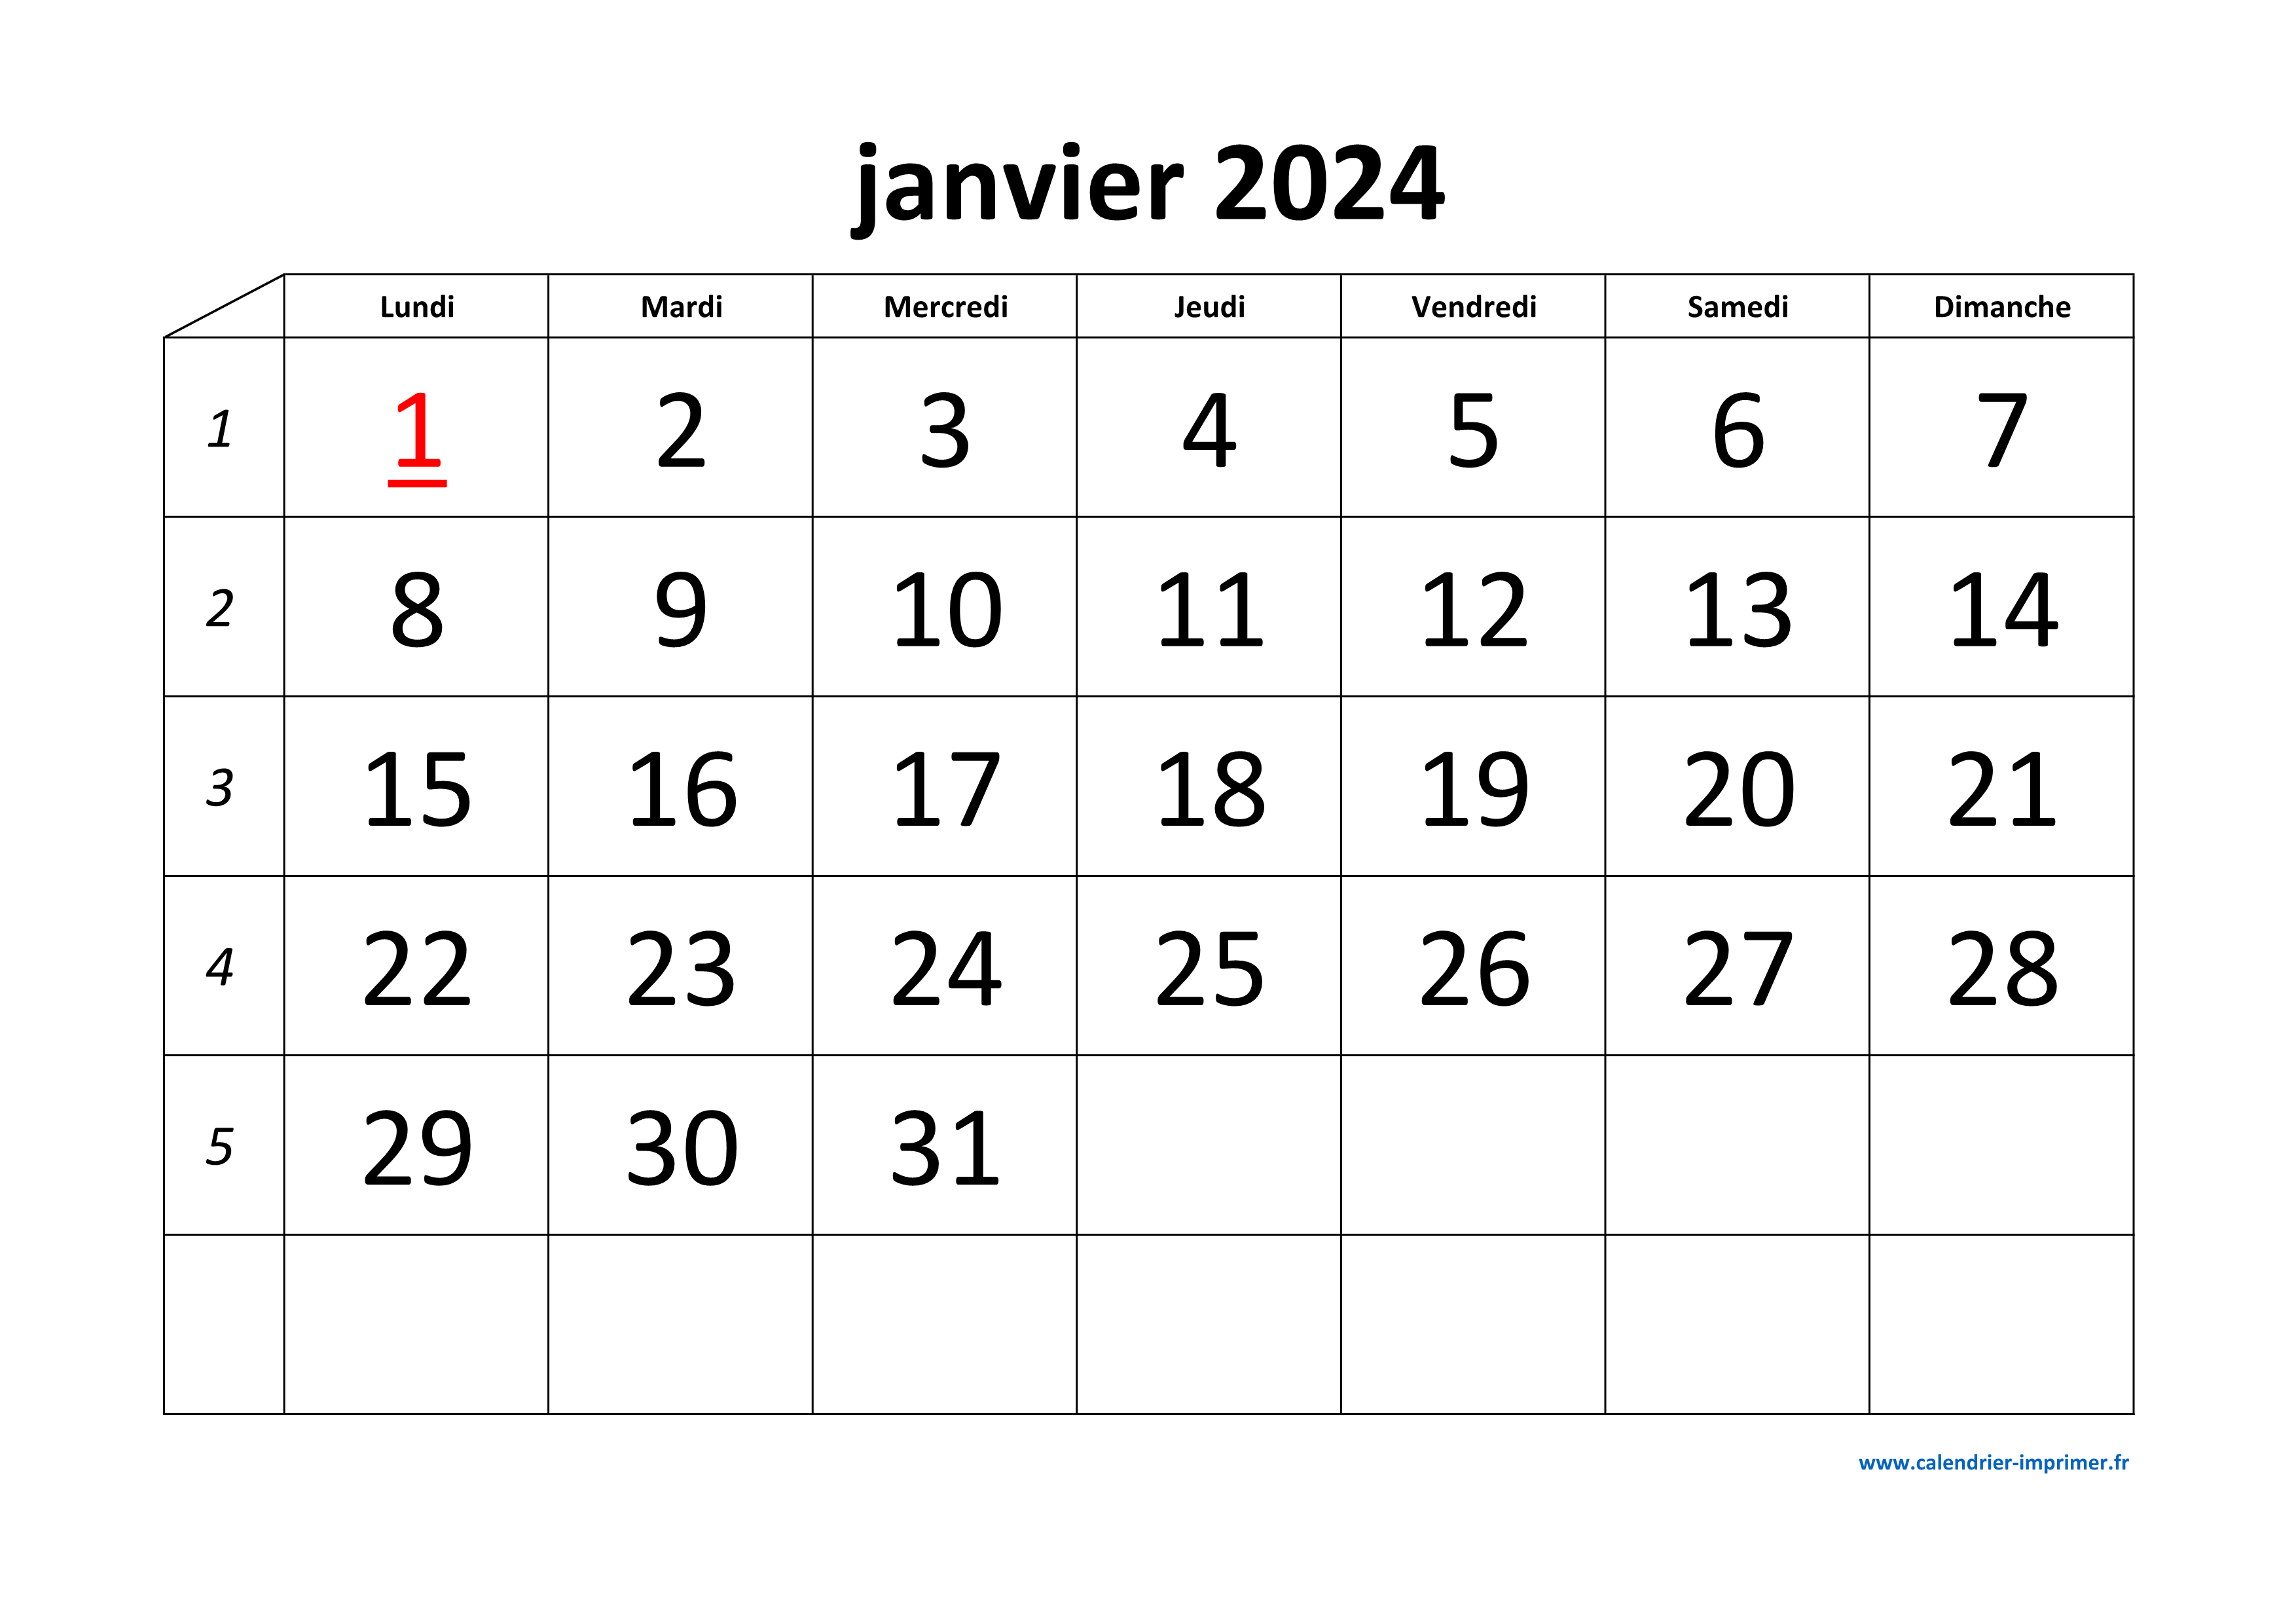 Calendrier mensuel à imprimer janvier 2024